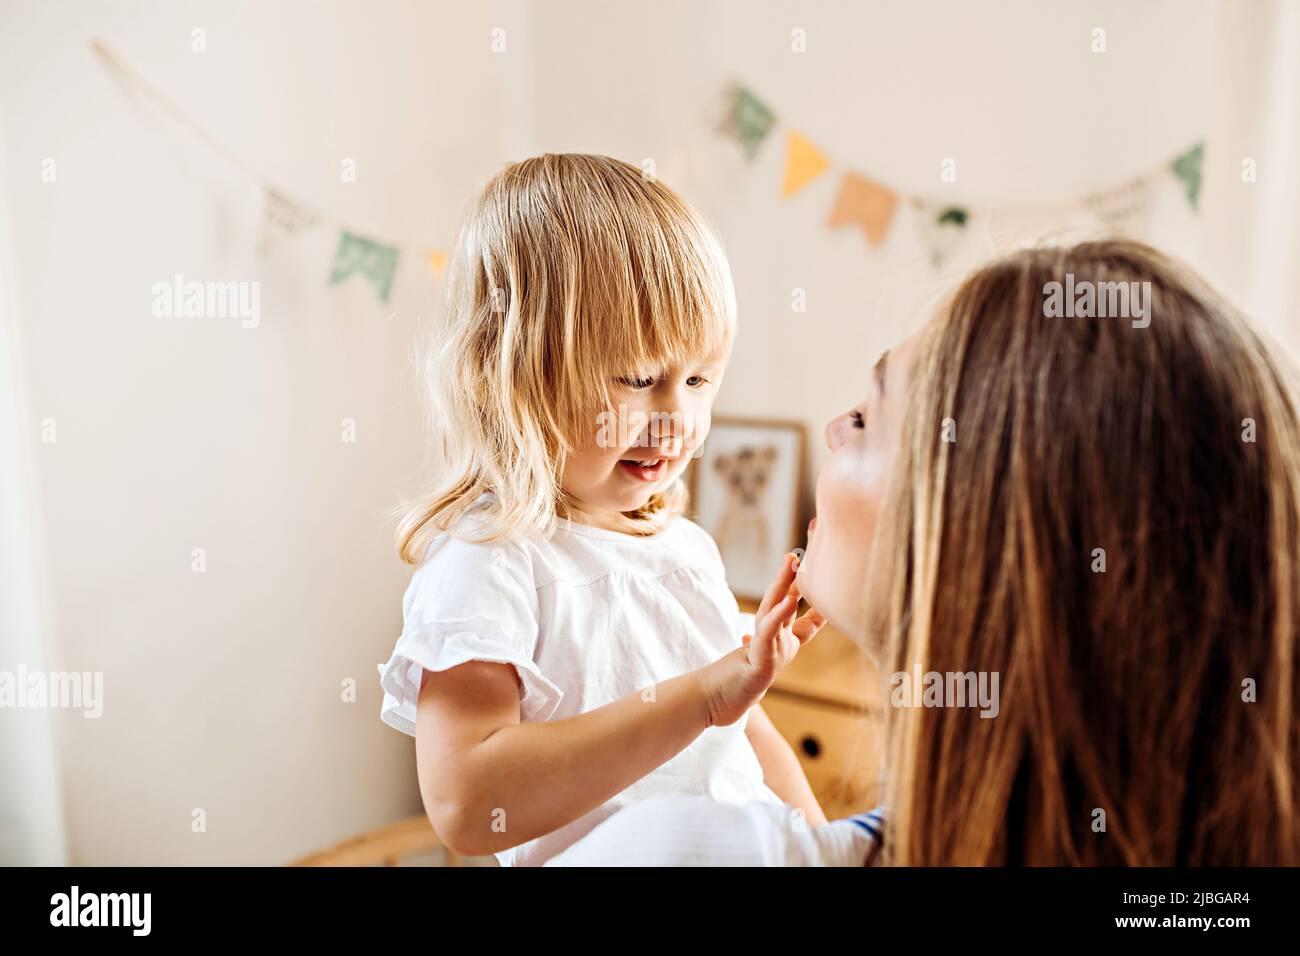 Ein kleines Kind sieht und berührt das Gesicht seiner Mutter. Mama lehrt kleine Tochter, sich um die Gesichtshaut zu kümmern Stockfoto